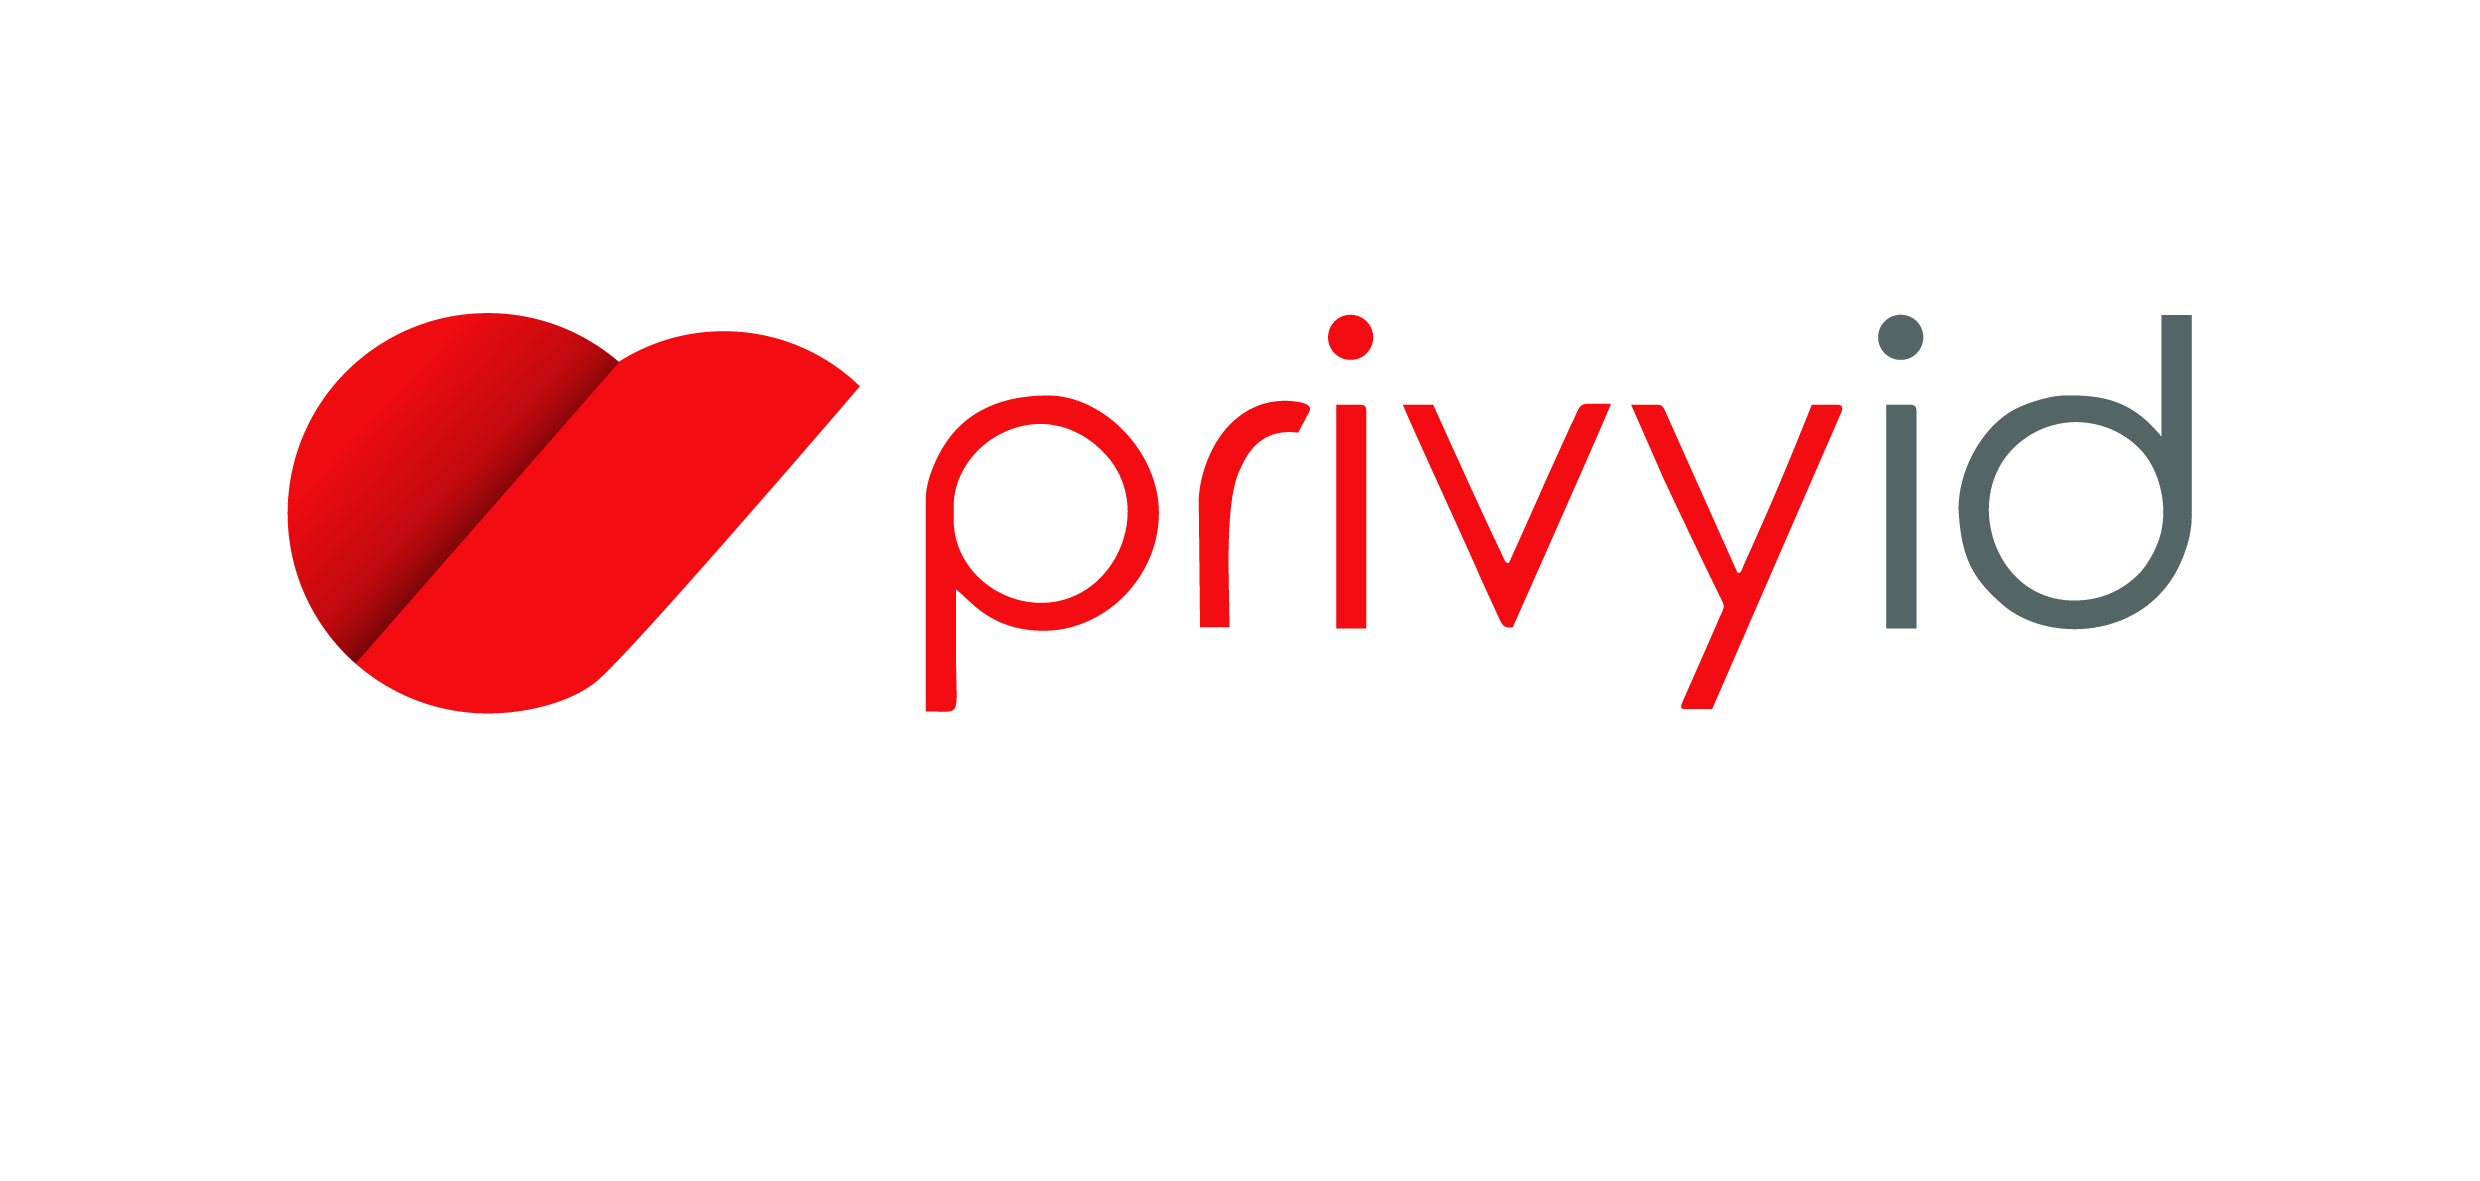 PrivyID memiliki otoritas untuk menerima pendaftaran, memverifikasi, serta menerbitkan sertifikat elektronik dan tanda tangan elektronik bagi warga negara Indonesia